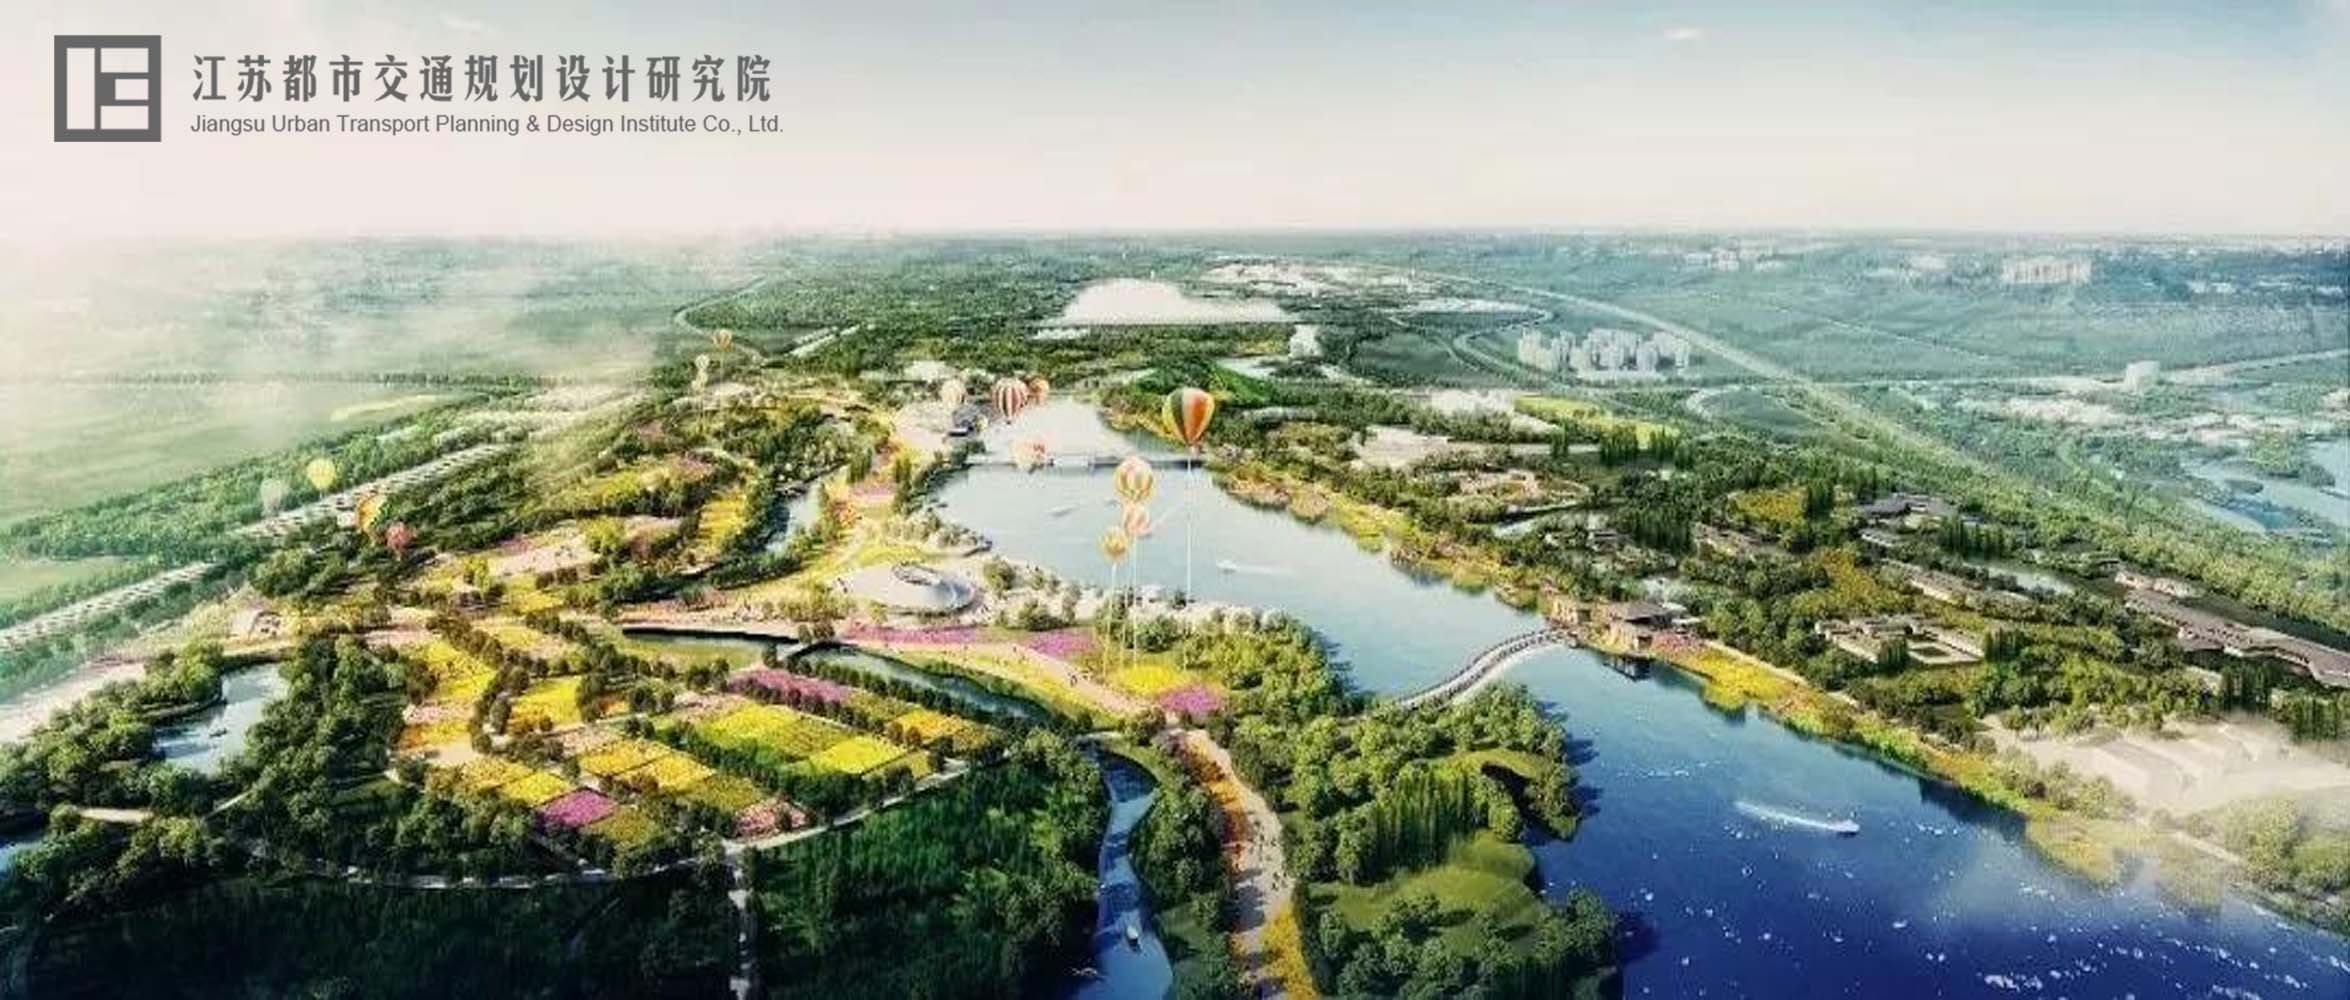 《2021年扬州世园会外围交通组织深化研究方案》 通过专家评审